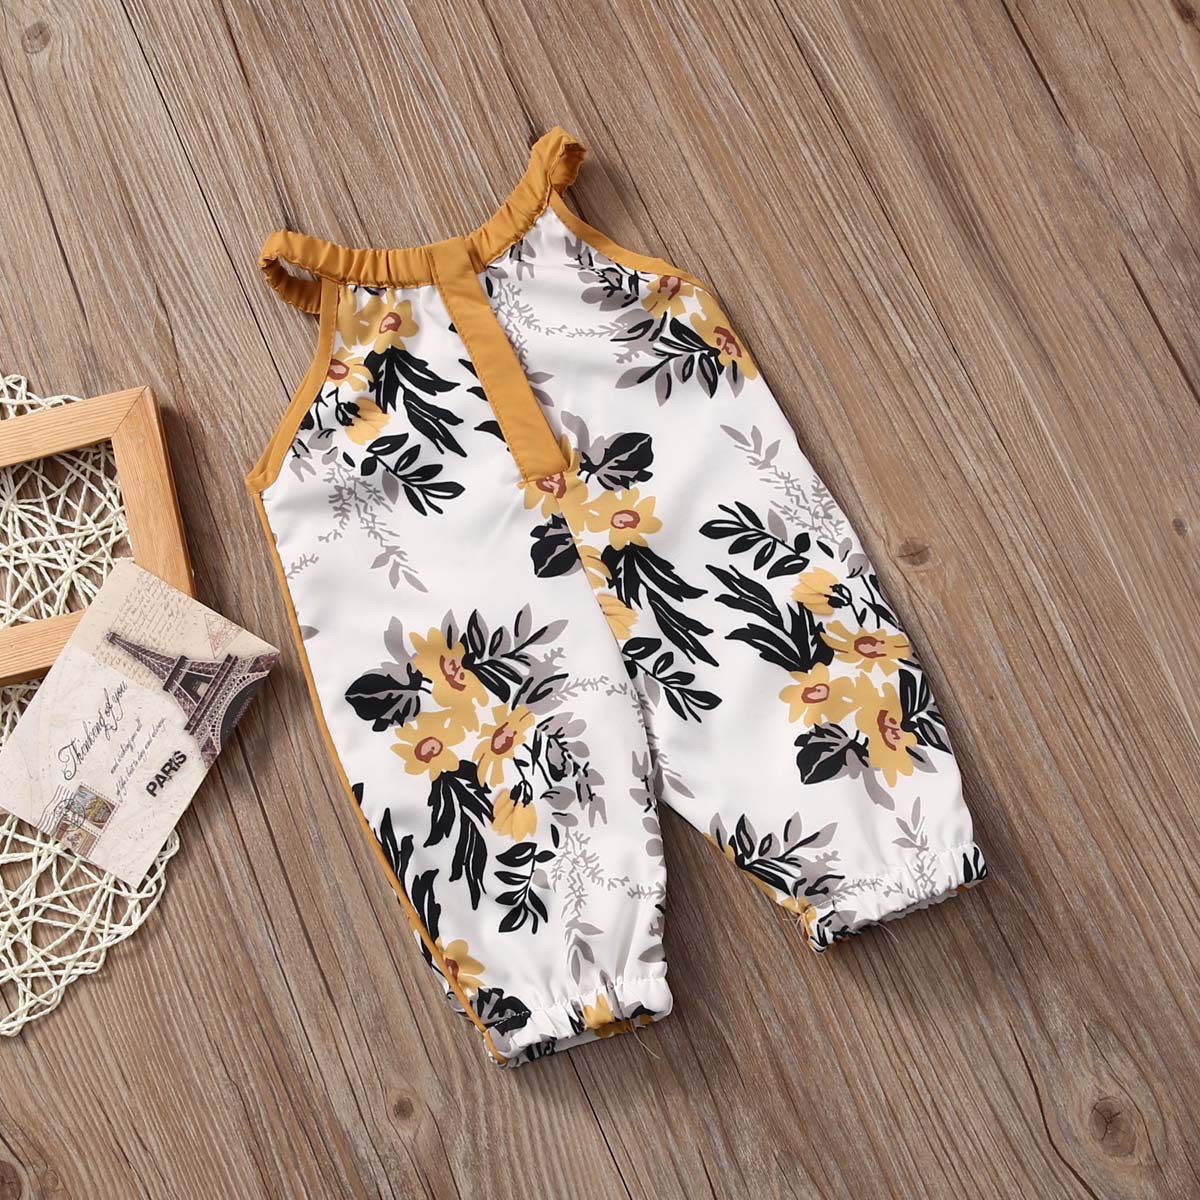 Toddler kid baby girl romper spædbarn jumpsuit print tøj outfit sæt sommer